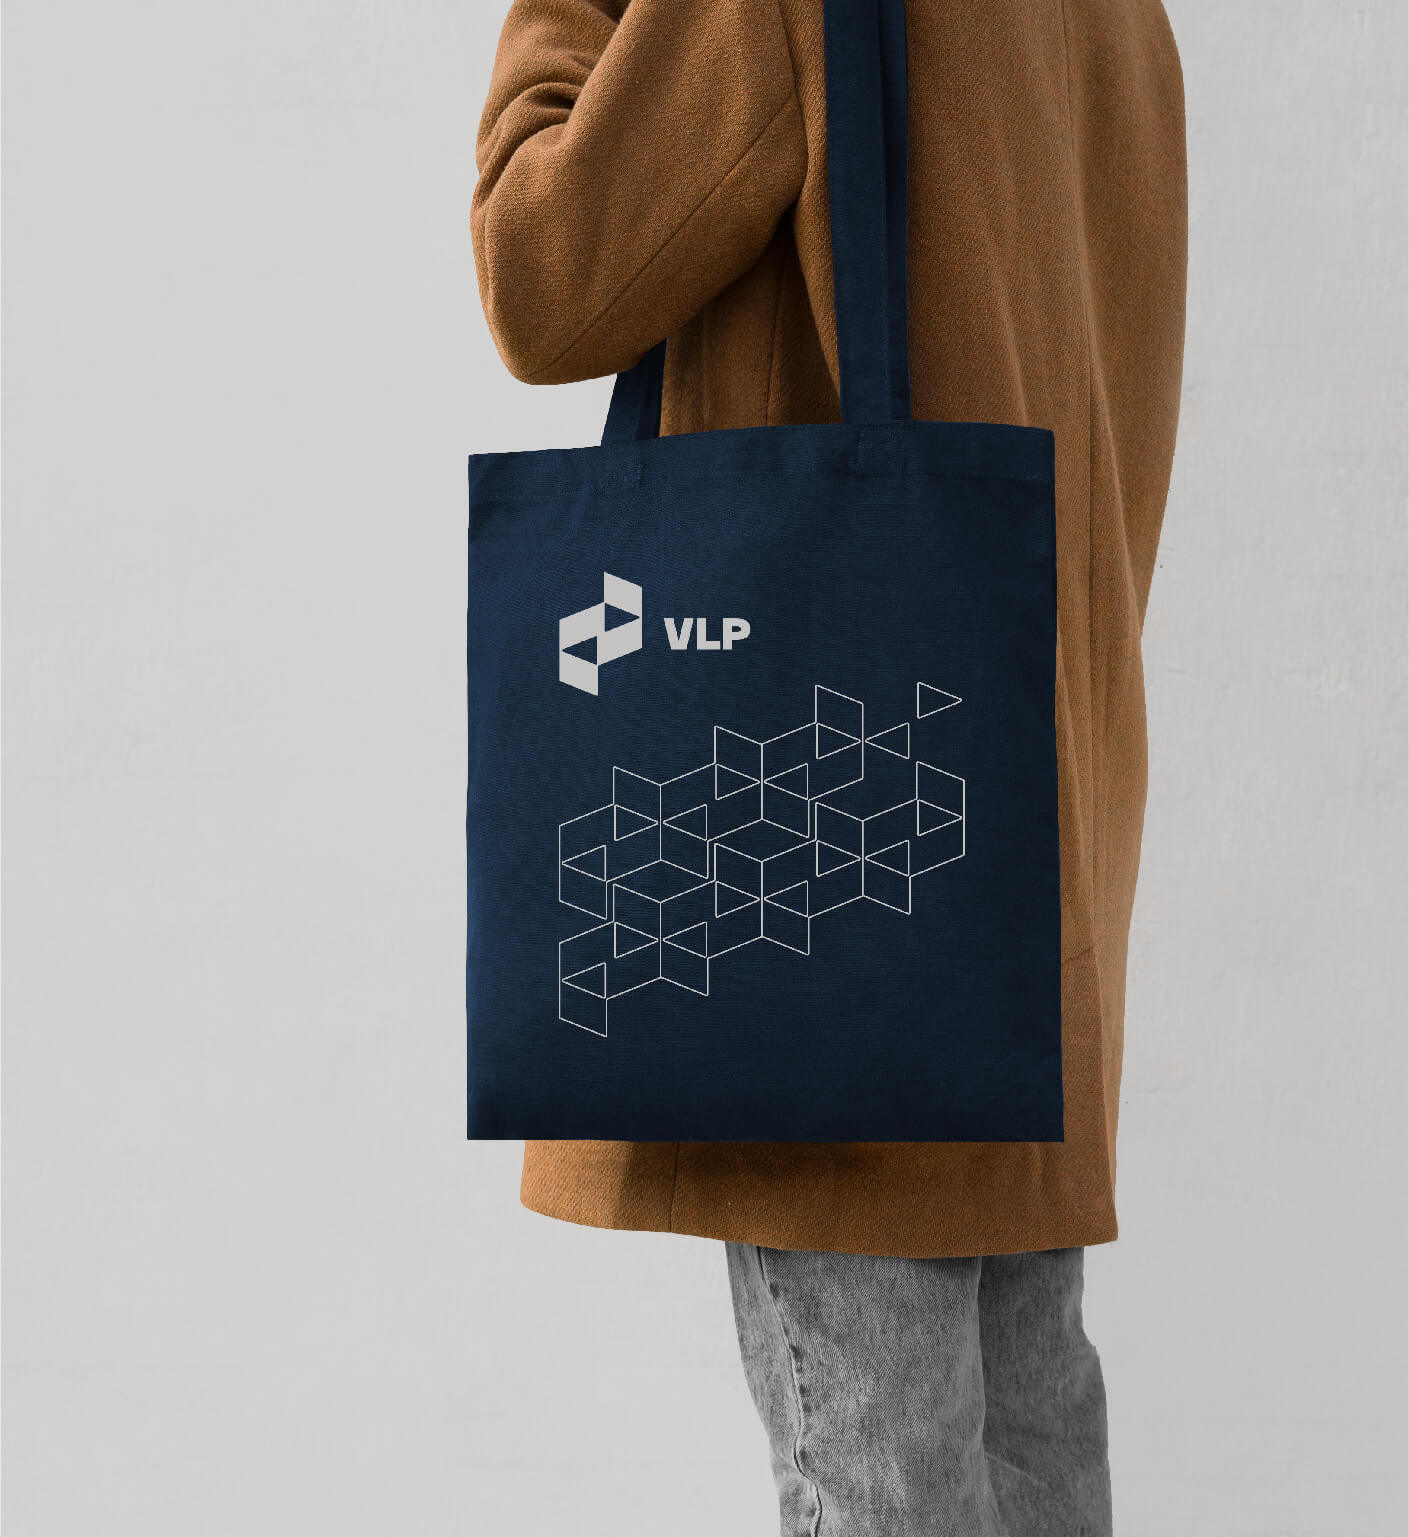 howdy design family branding for vlp